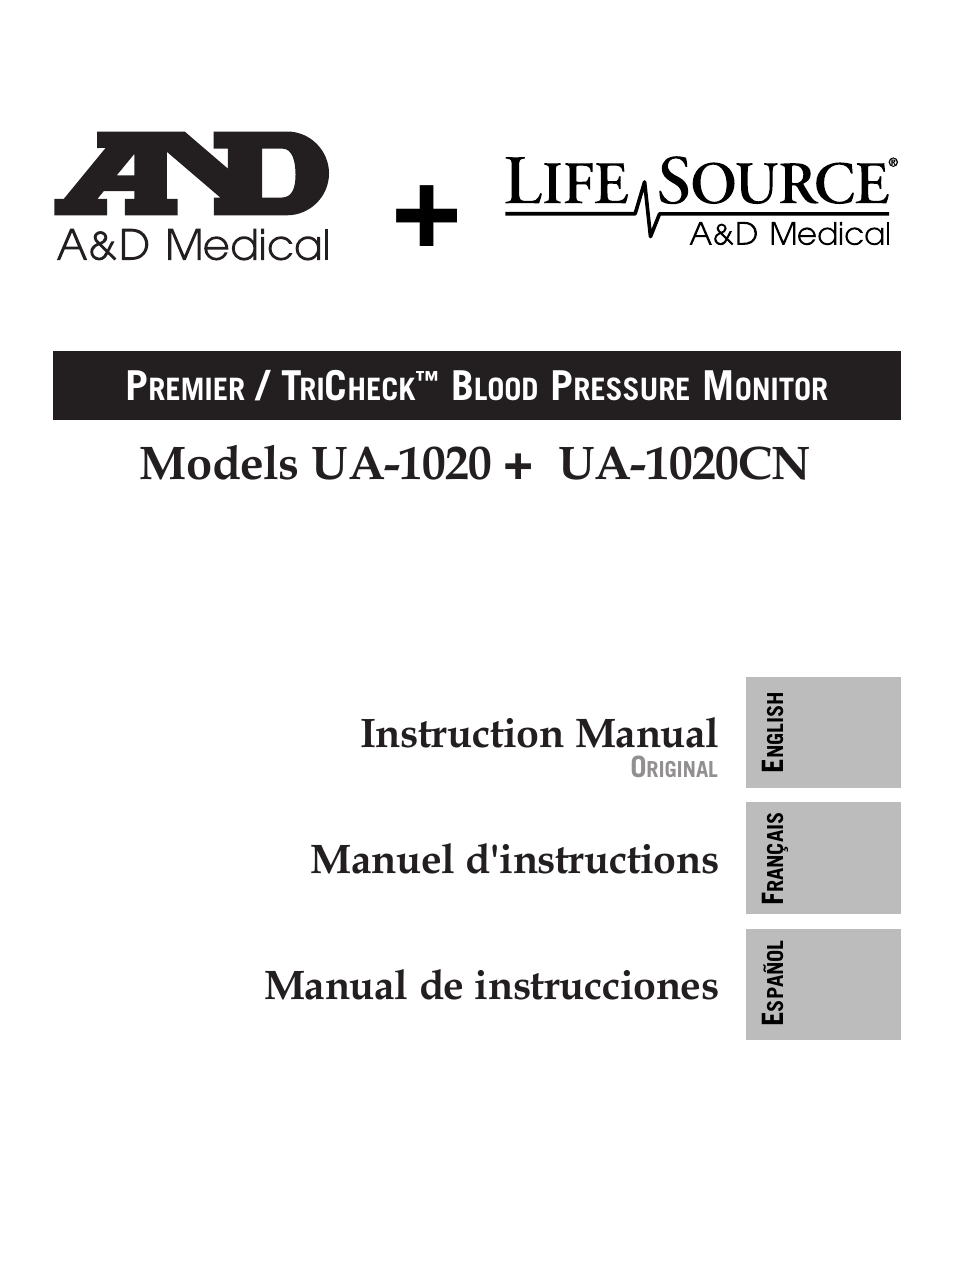 Premier/TriCheck Blood Pressure MOnitor UA-1020